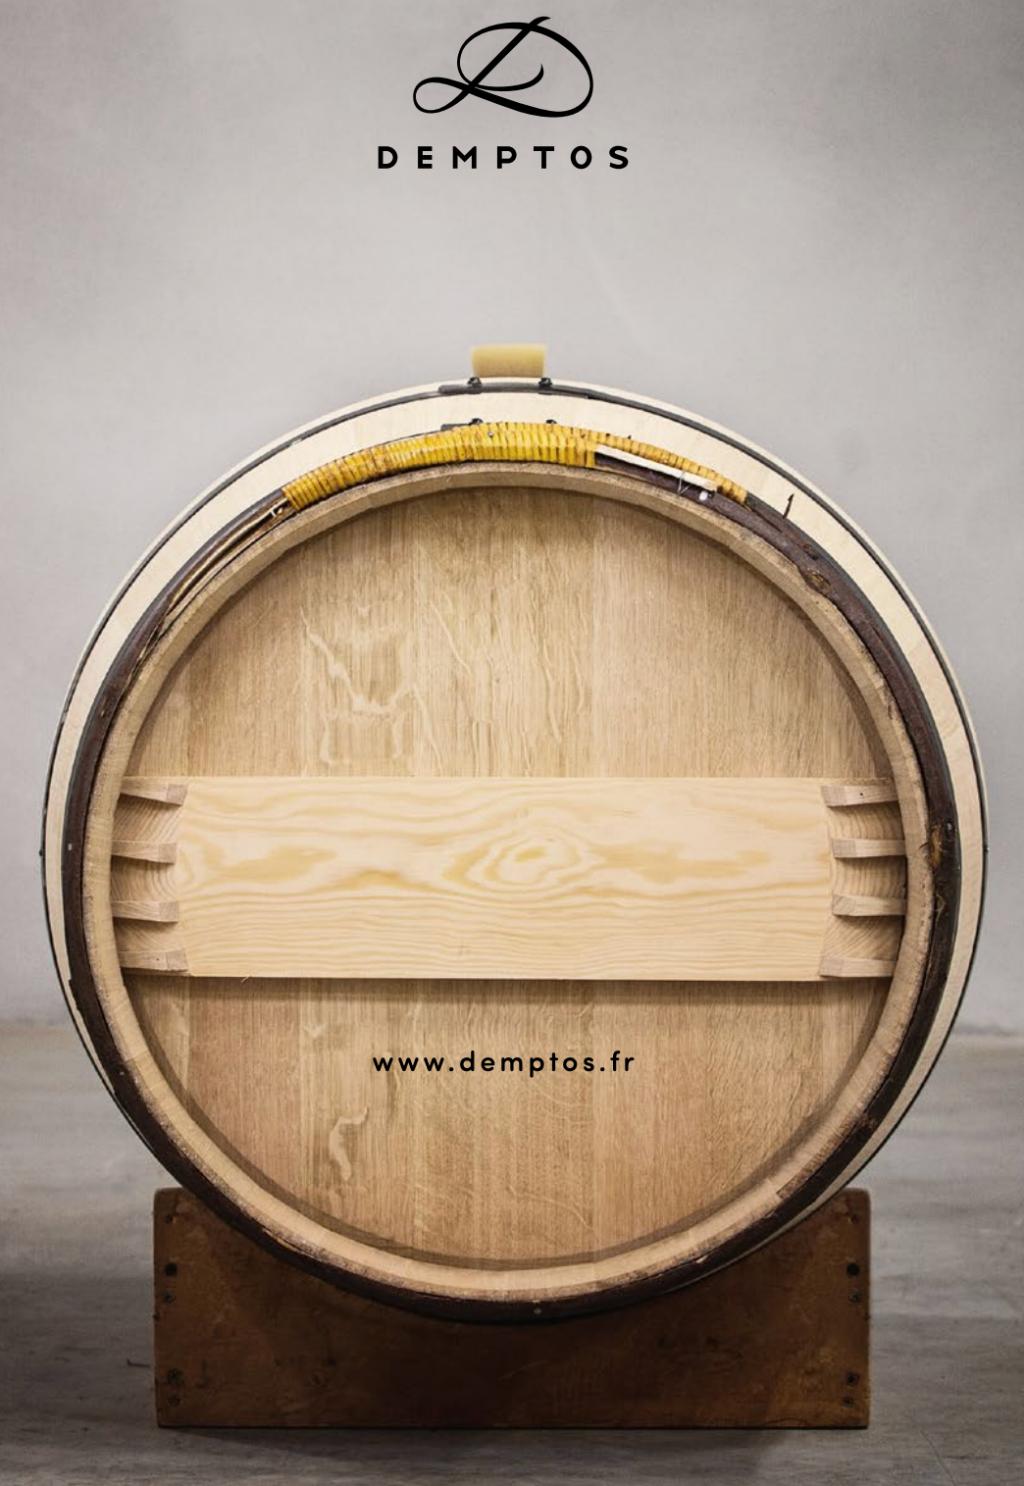 Personalized oak wine barrel head